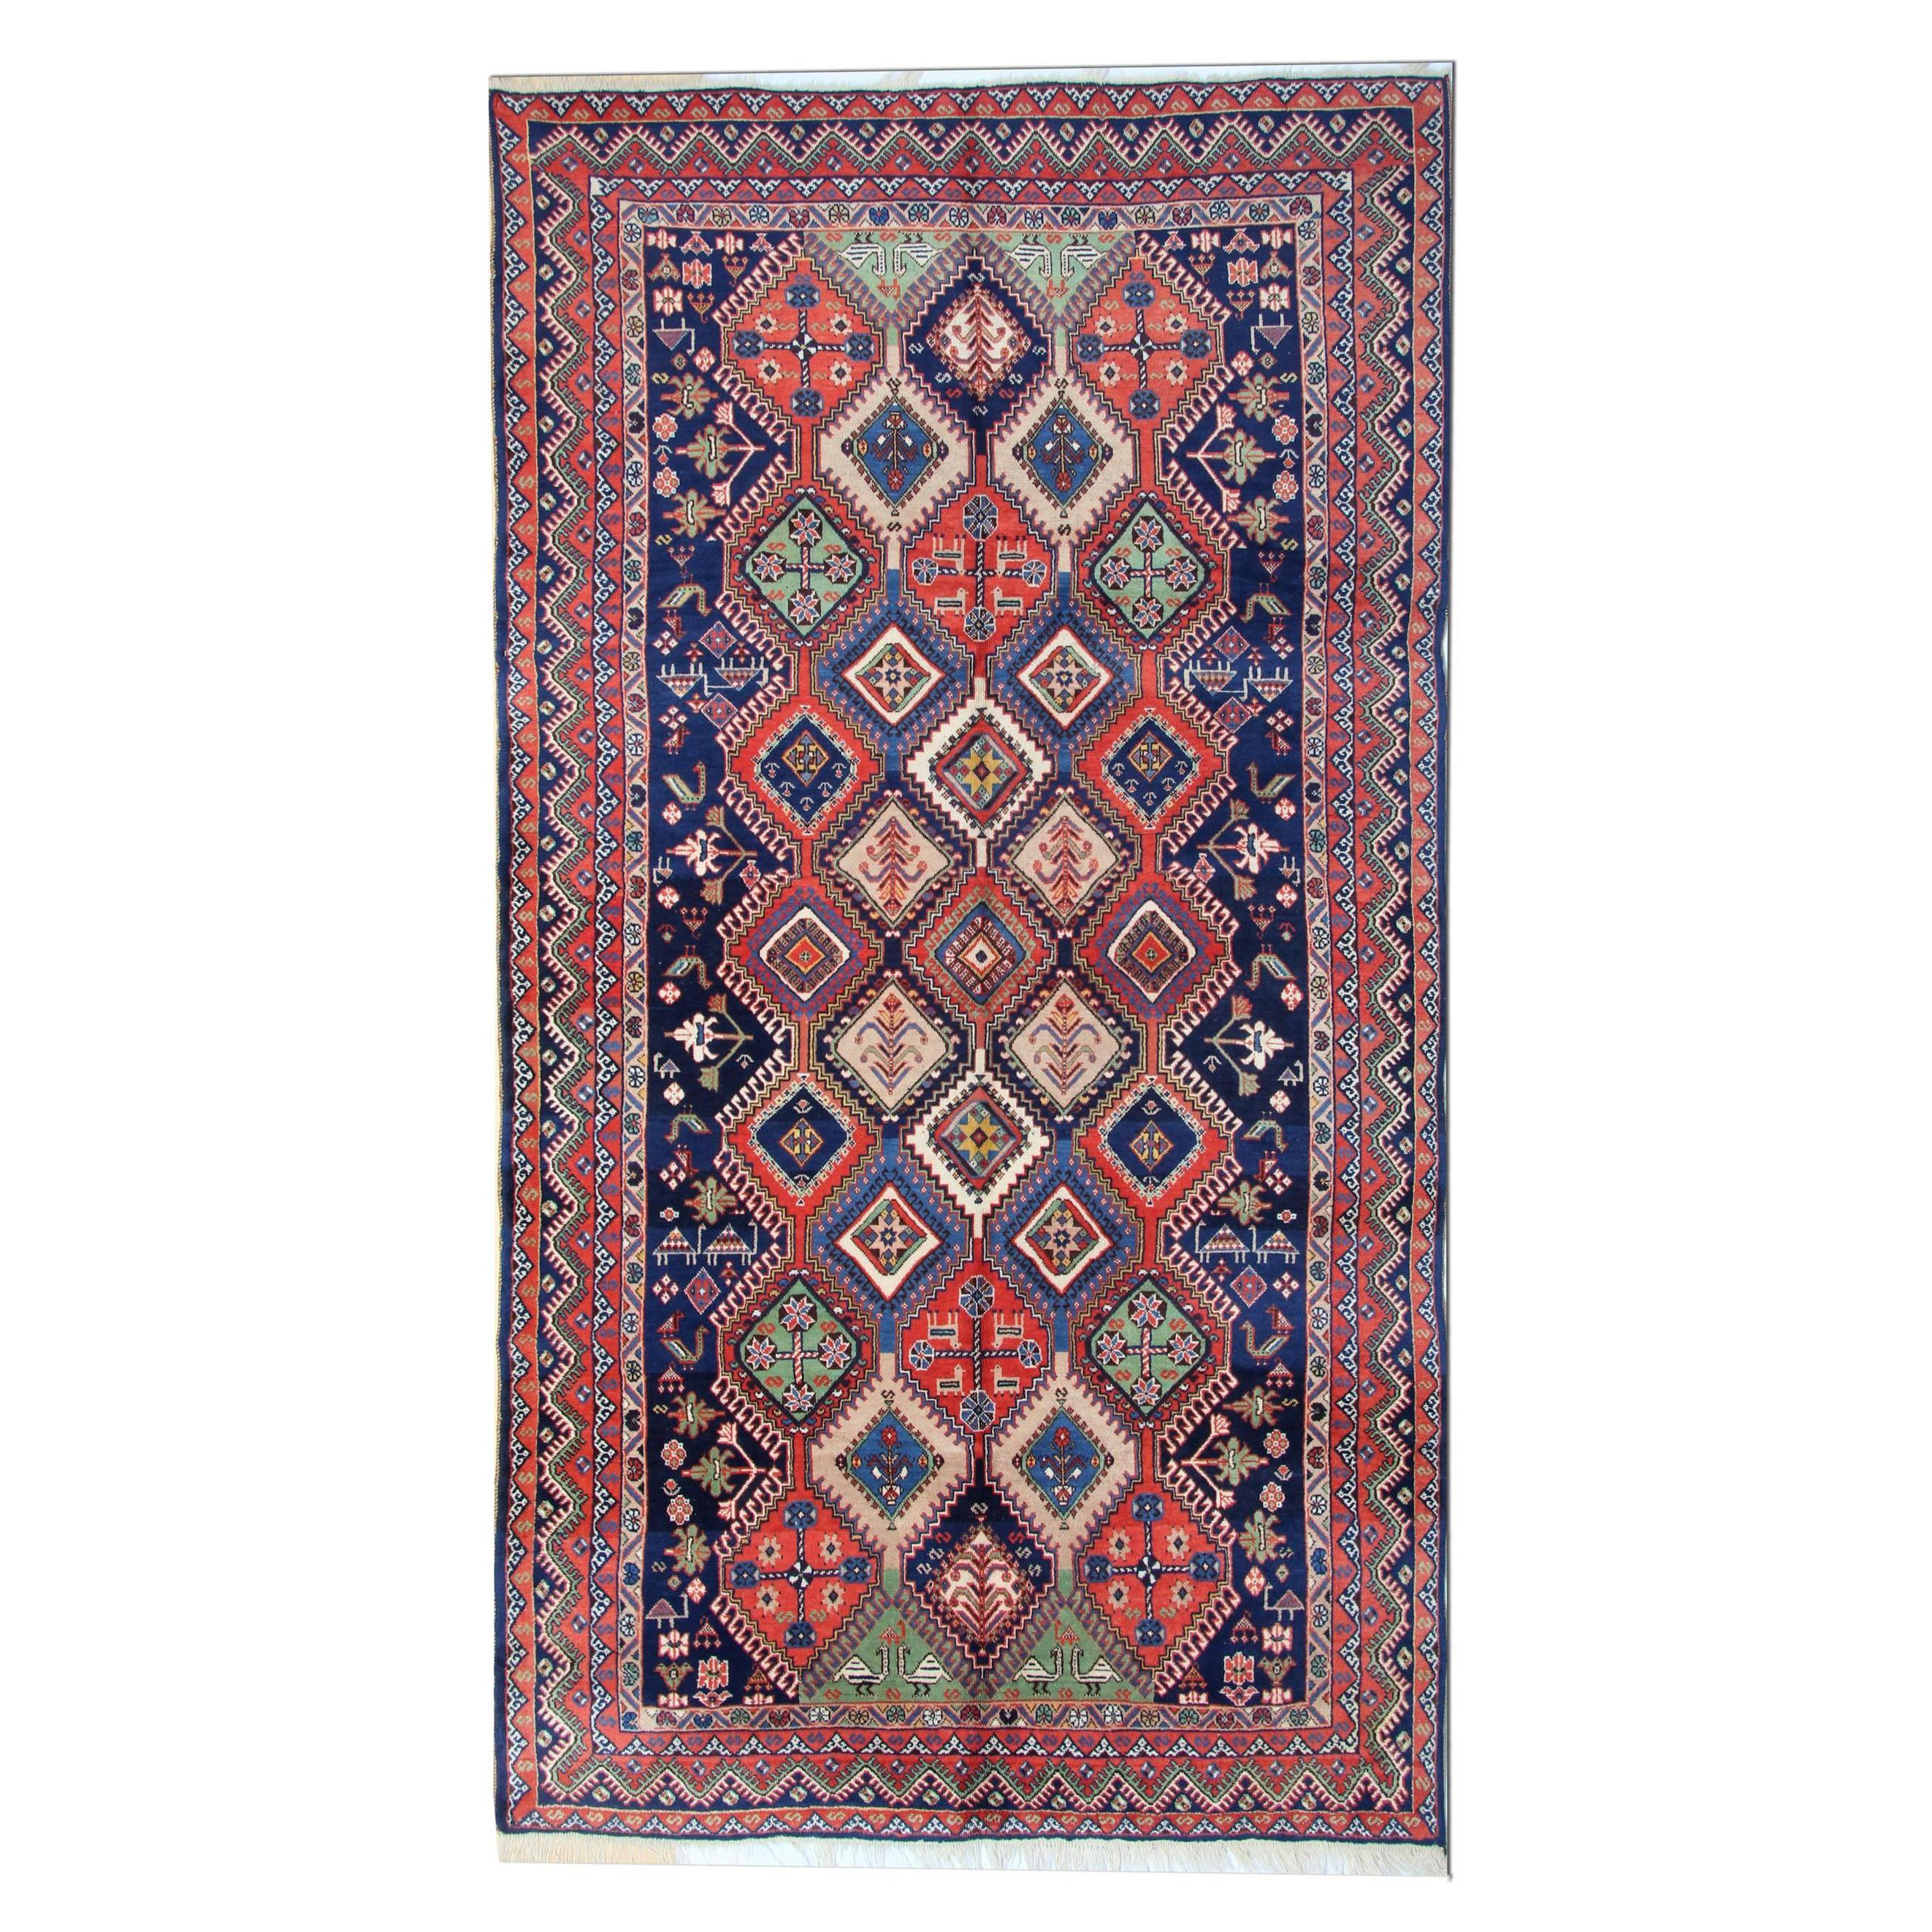 Handgefertigter antiker orientalischer kaukasischer Teppich, geometrischer Stammesteppich